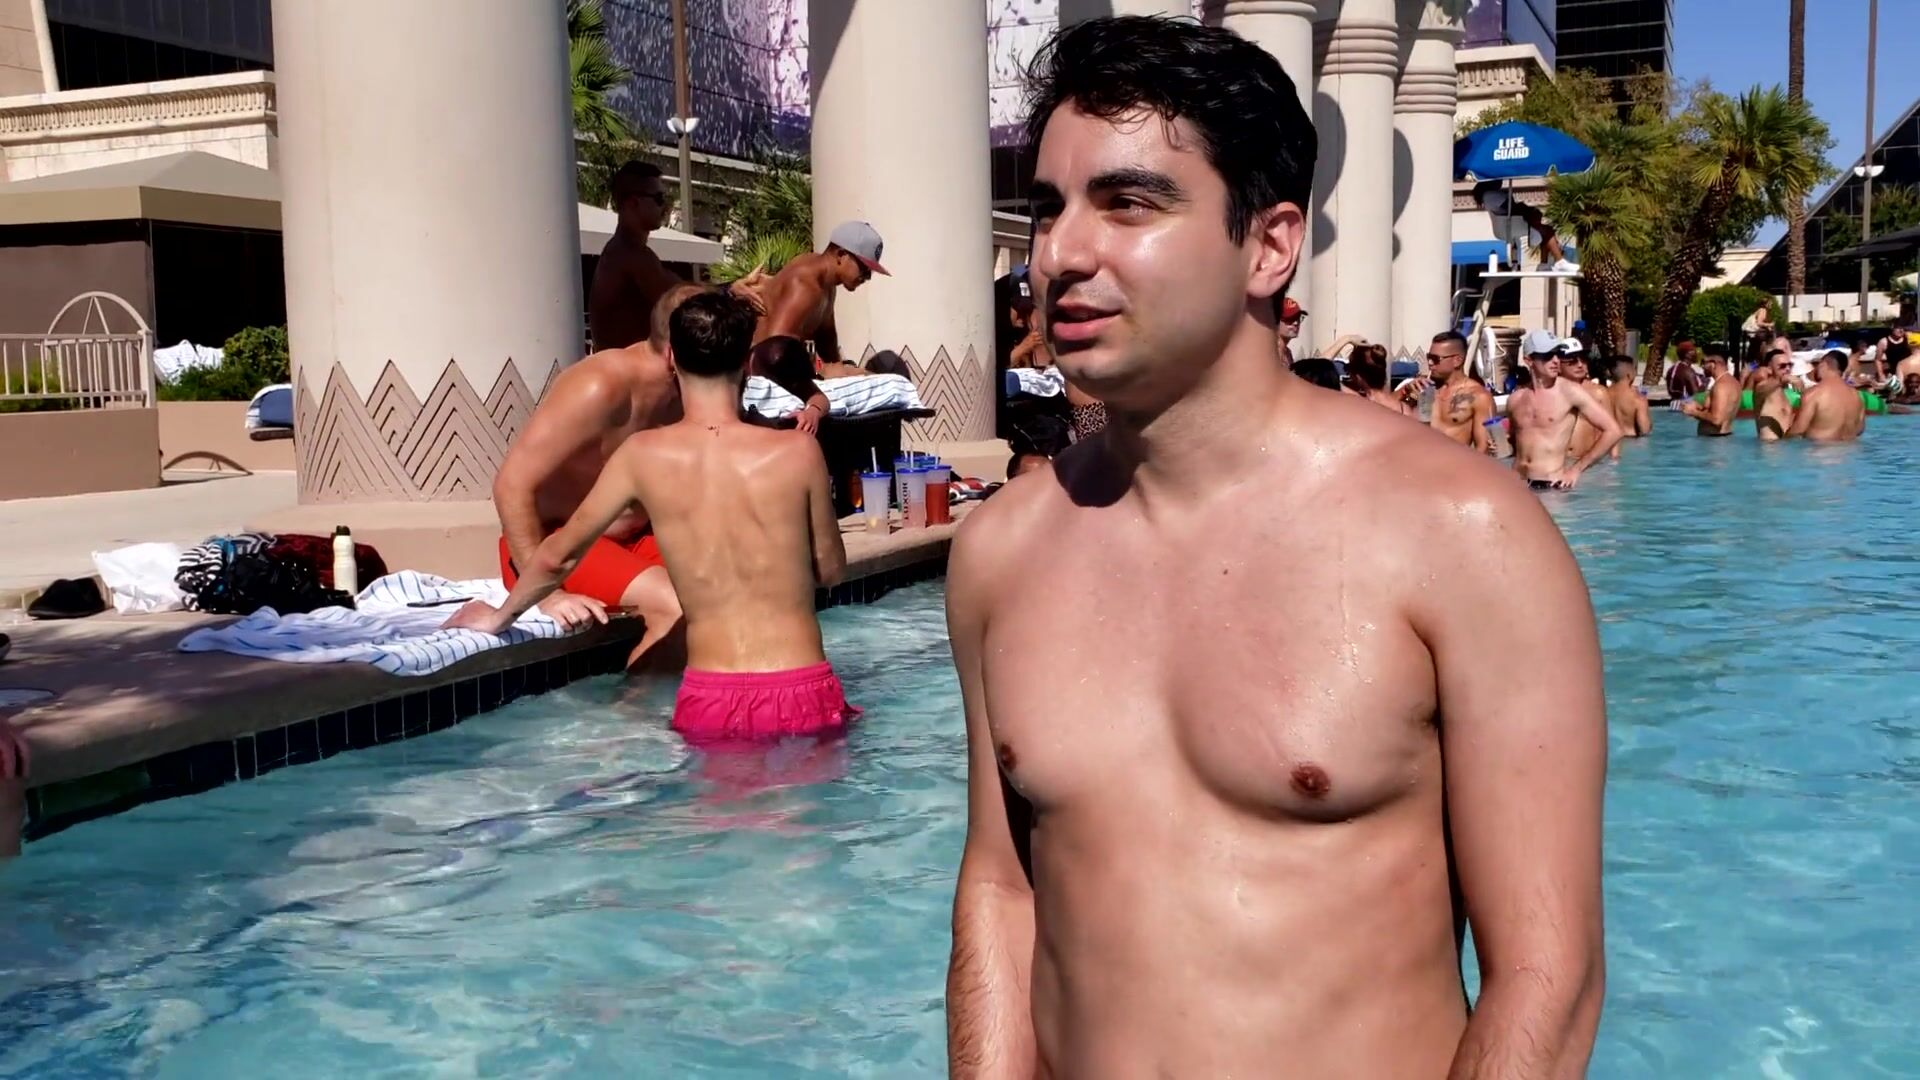 Desnudo en una piscina pública y atrapado ver en linea